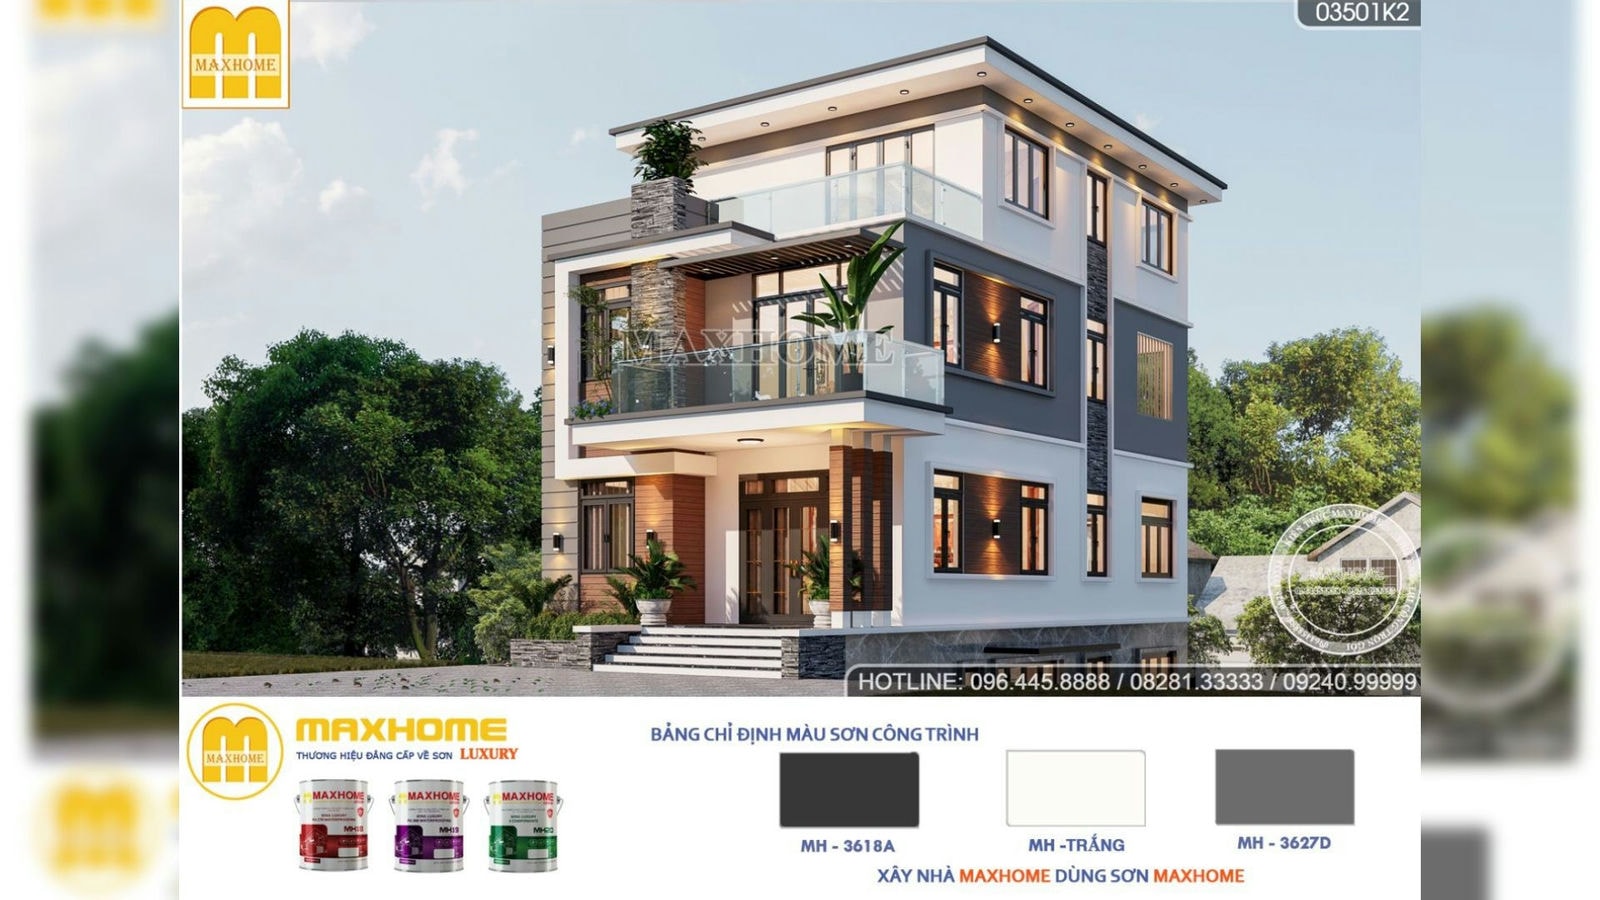 Biệt thự hiện đại 3 tầng 1 tum đẳng cấp tại Thái Nguyên do Maxhome thiết kế | MH01999